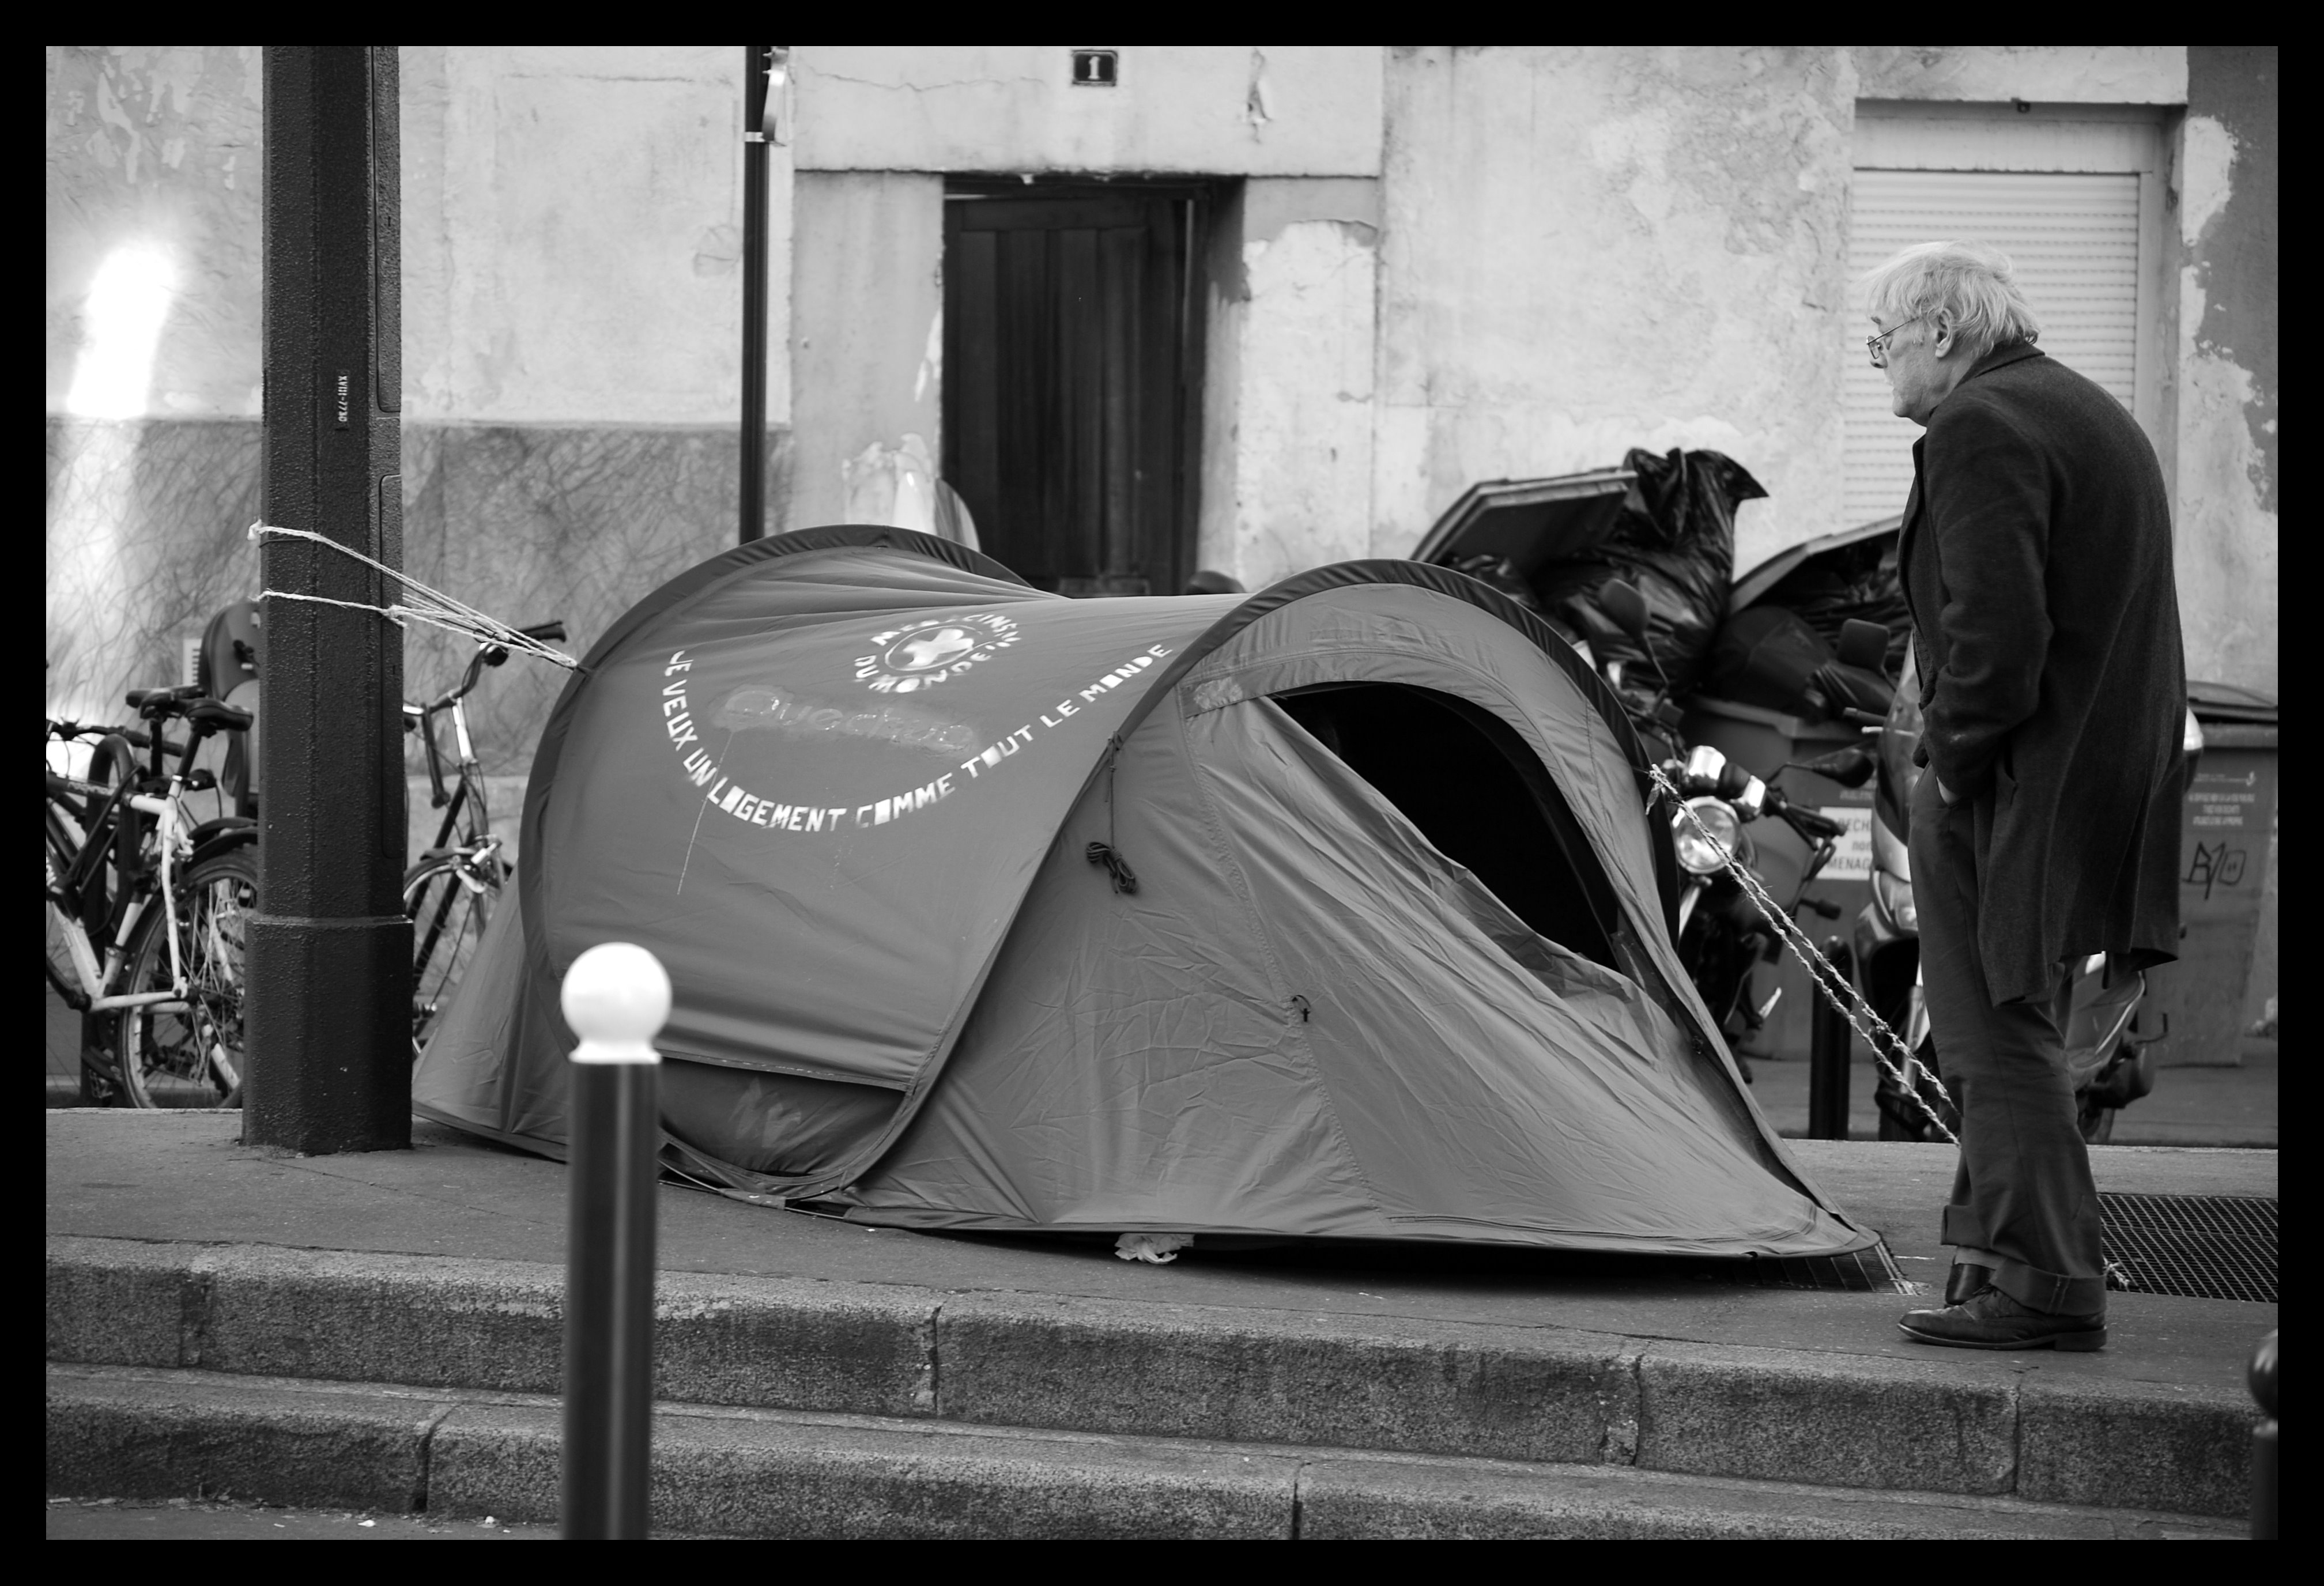 Tenda de campanya al mig del carrer_I .. C .. U_Flickr